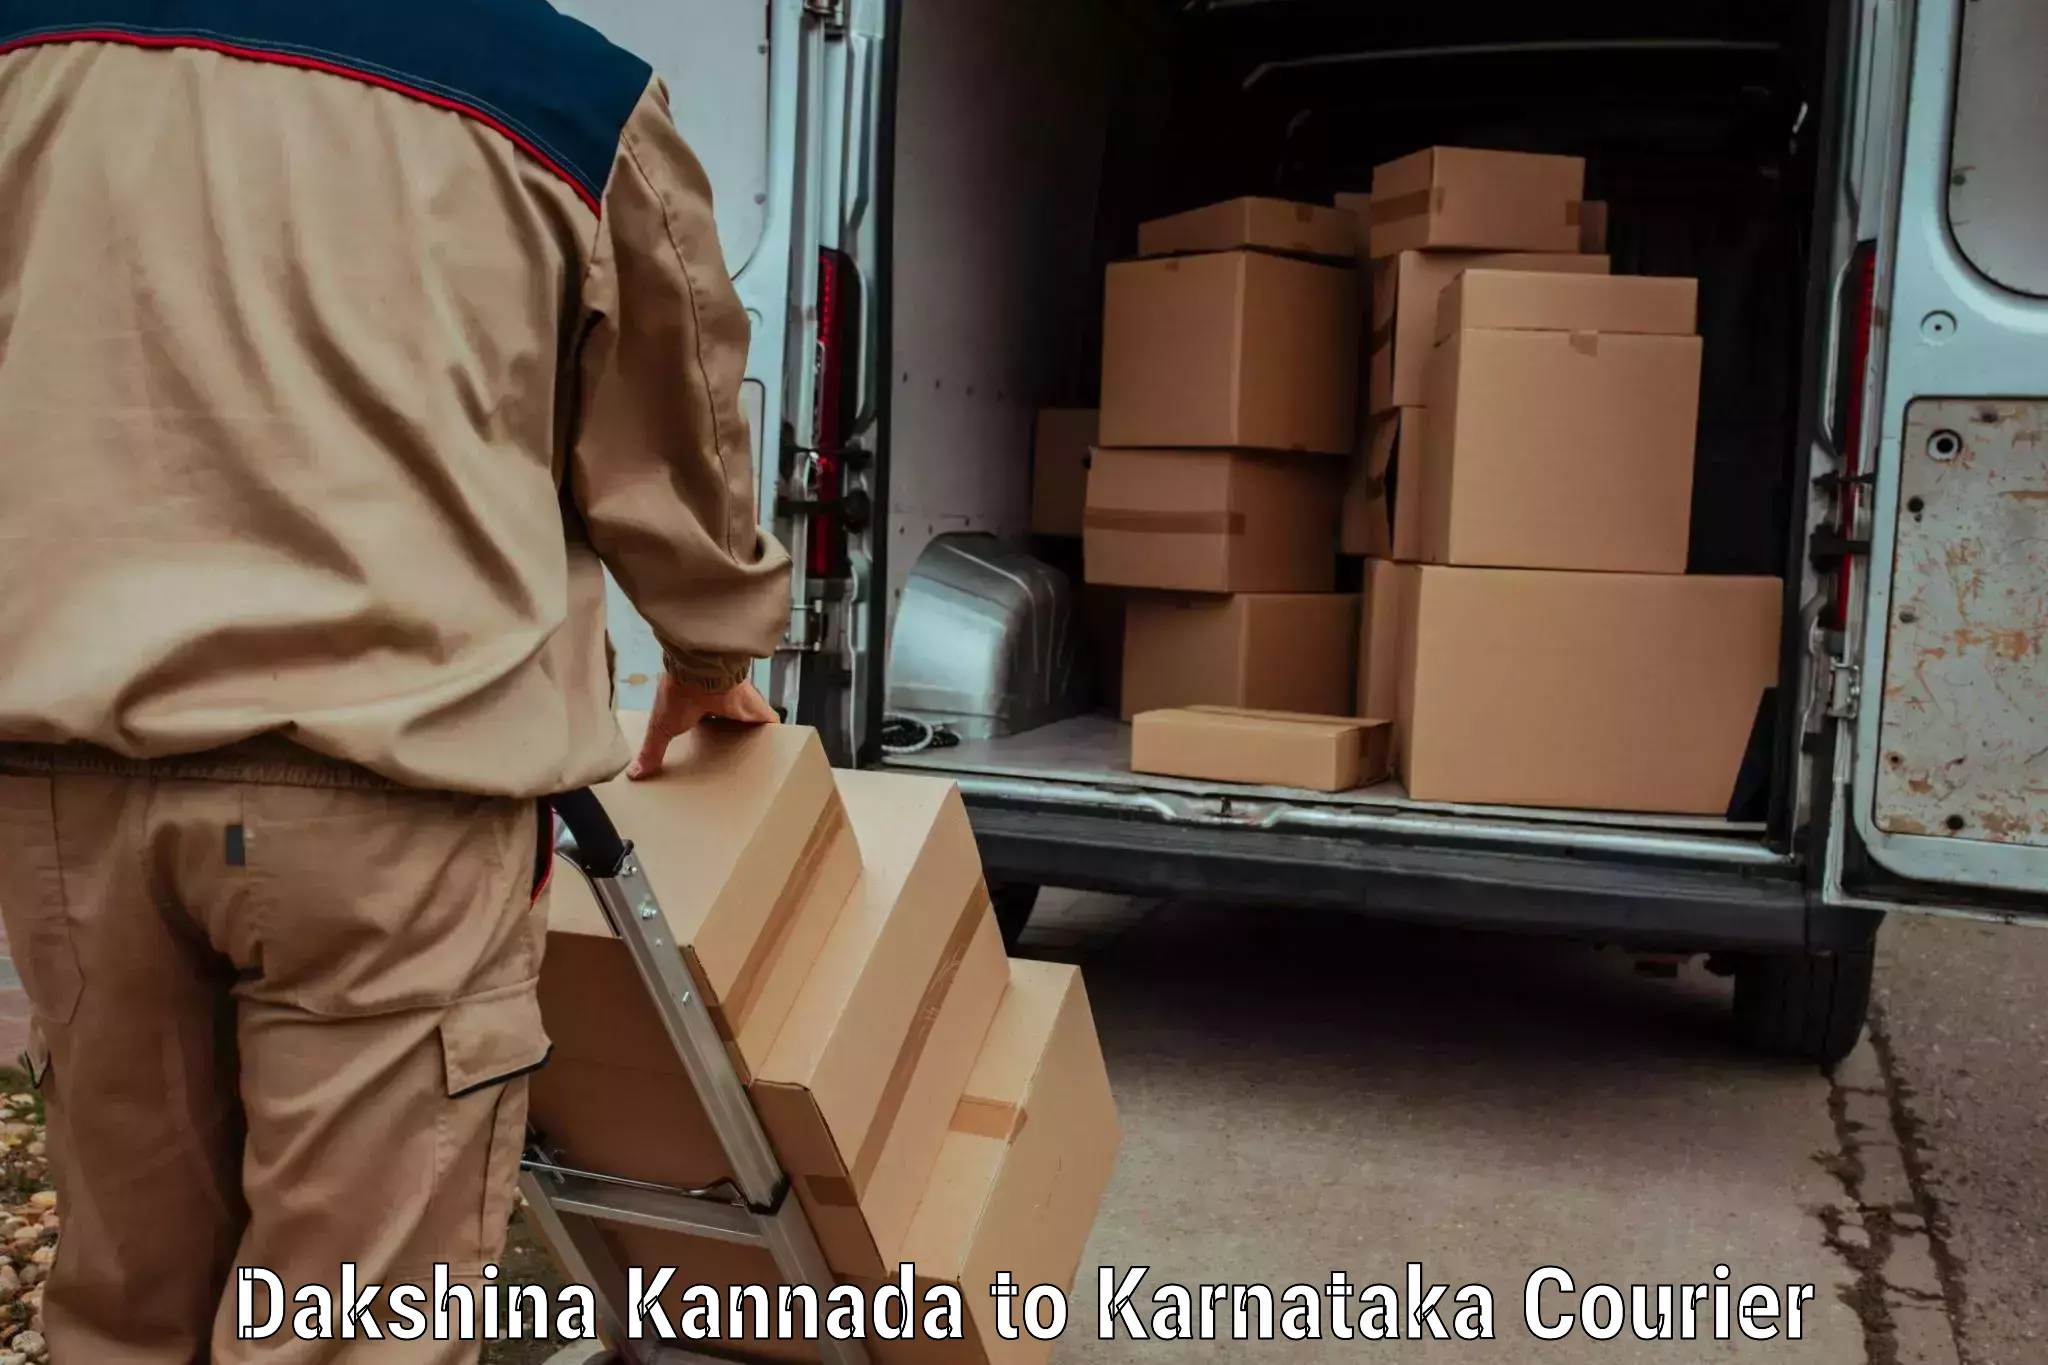 High-capacity parcel service Dakshina Kannada to Ankola